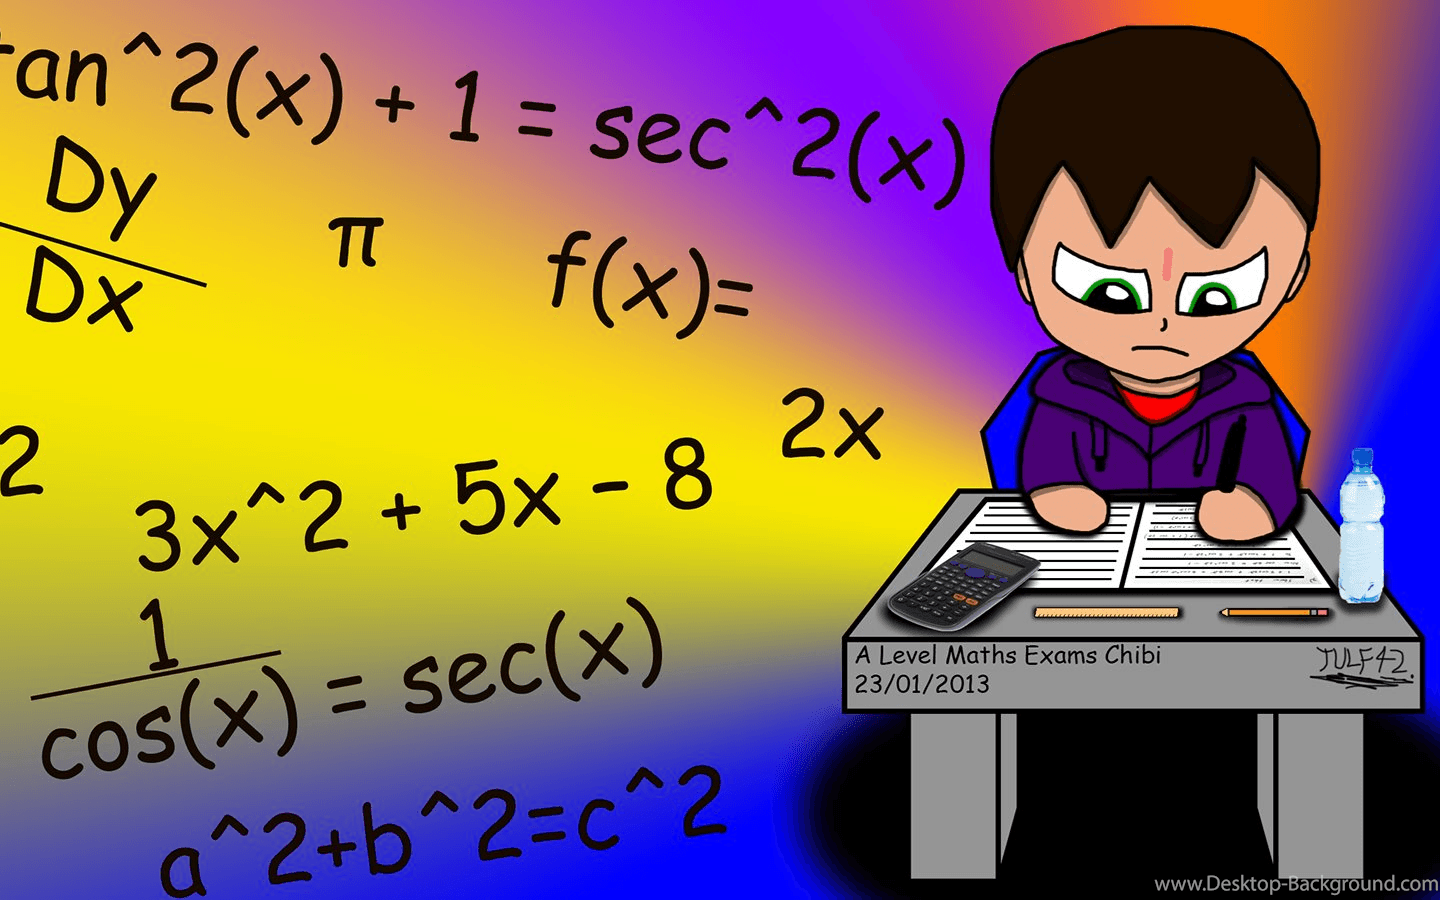 A Level Maths Exam Chibi Wallpaper By Tulf42 Desktop